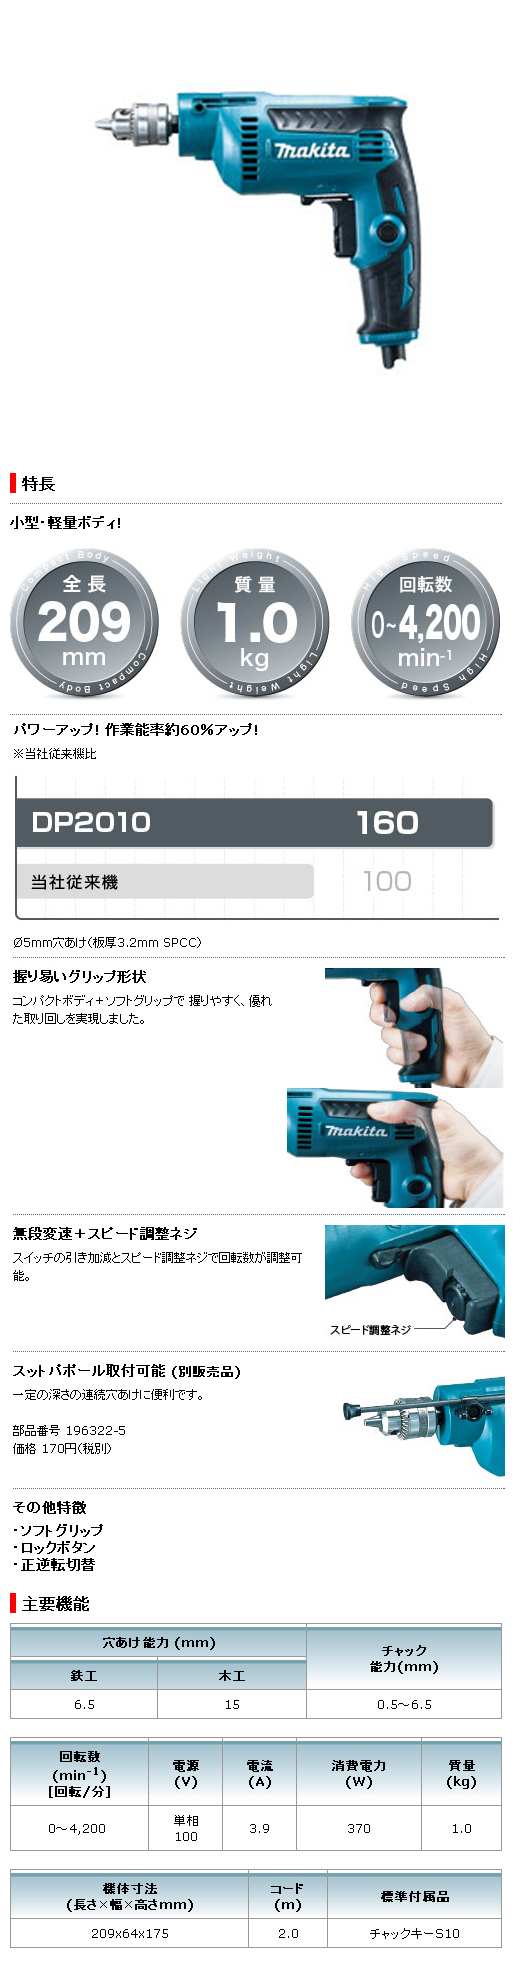 マキタ 6.5mm 高速ドリル DP2010 電動工具・エアー工具・大工道具（電動工具＞電気ドリル（小型6.5mm））